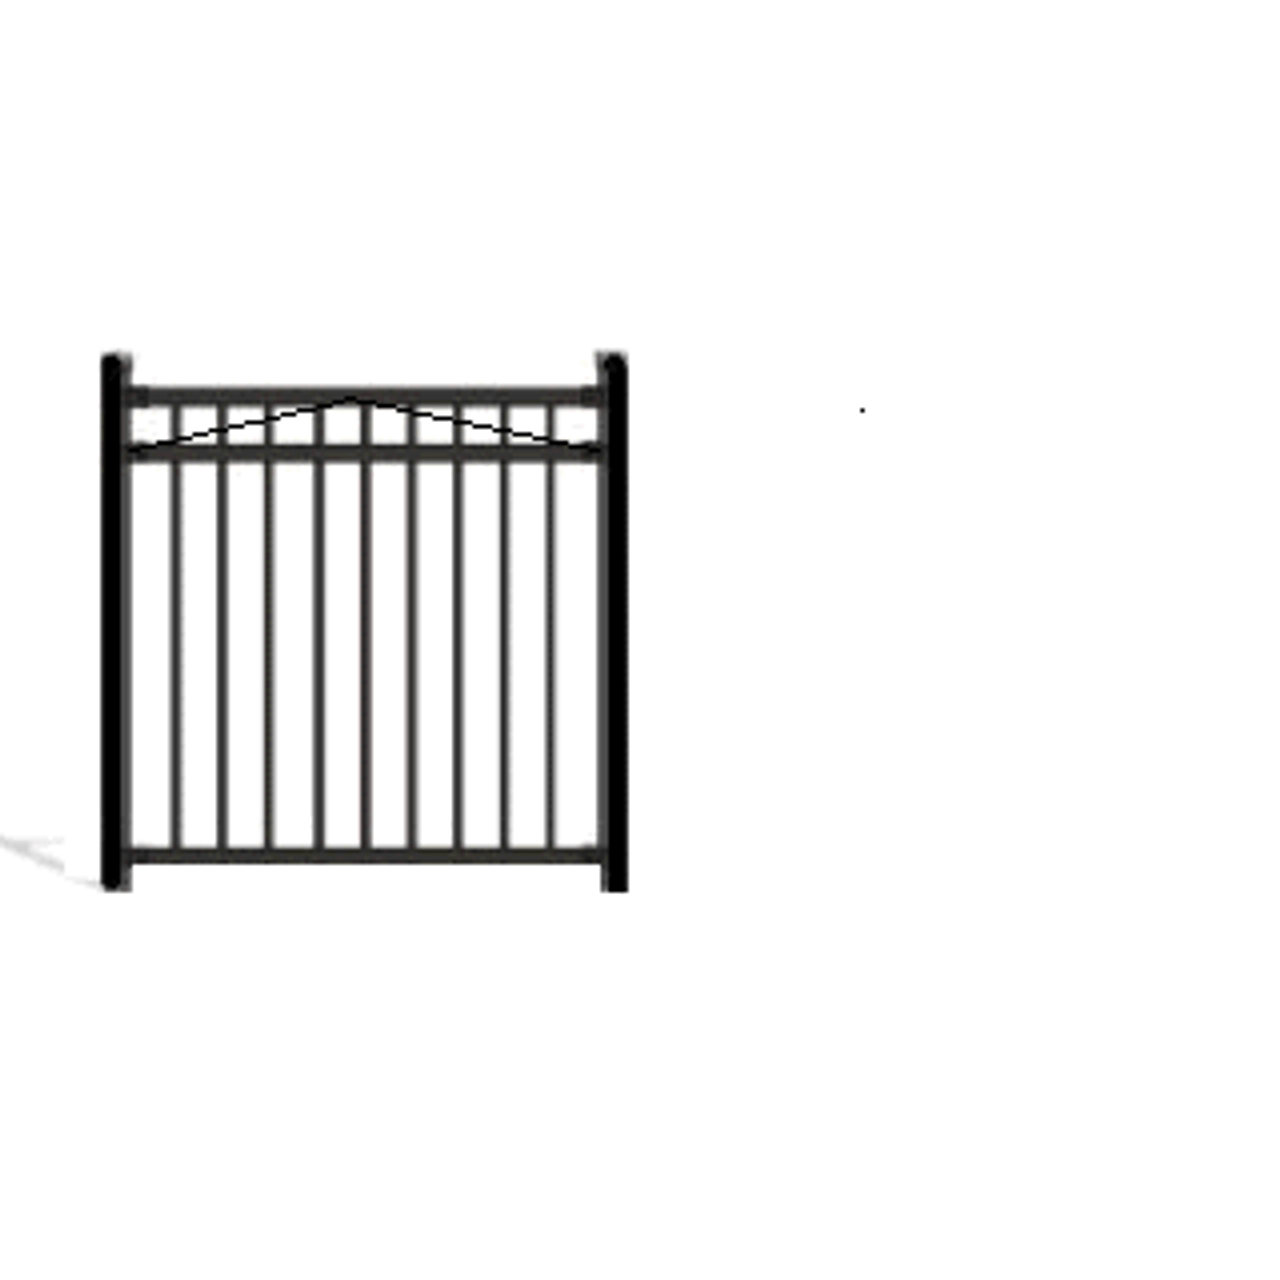 PALACE Aluminum Fence Matching Gates Pool 3 Rail, 3/4/